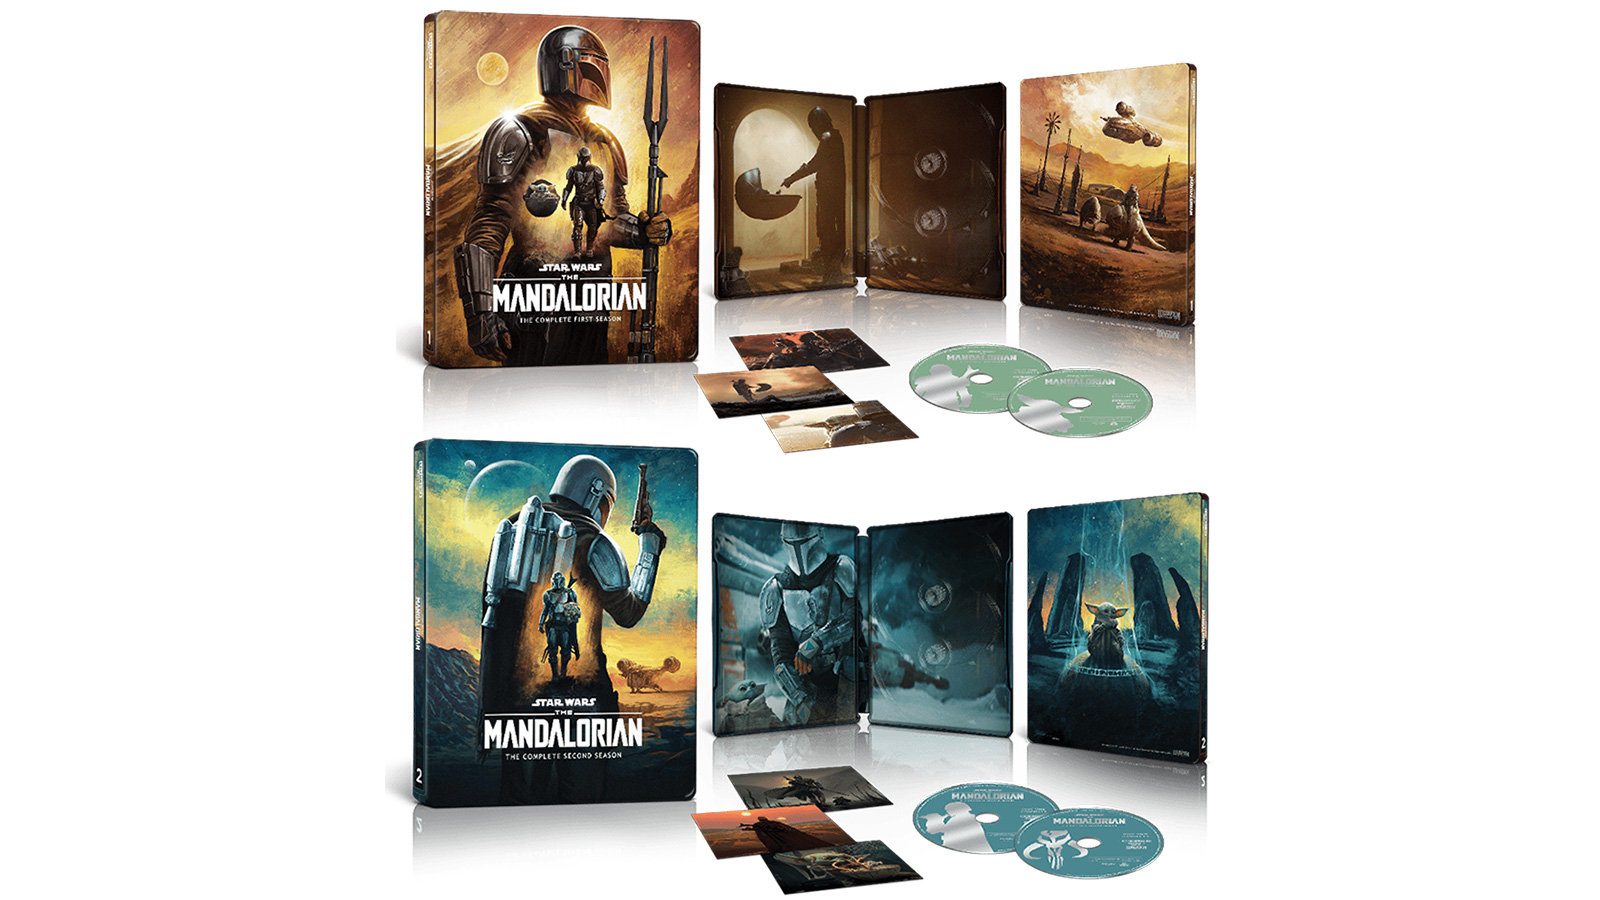 Coming To 4K UHD & Blu-ray - The Mandalorian Season 1 & 2